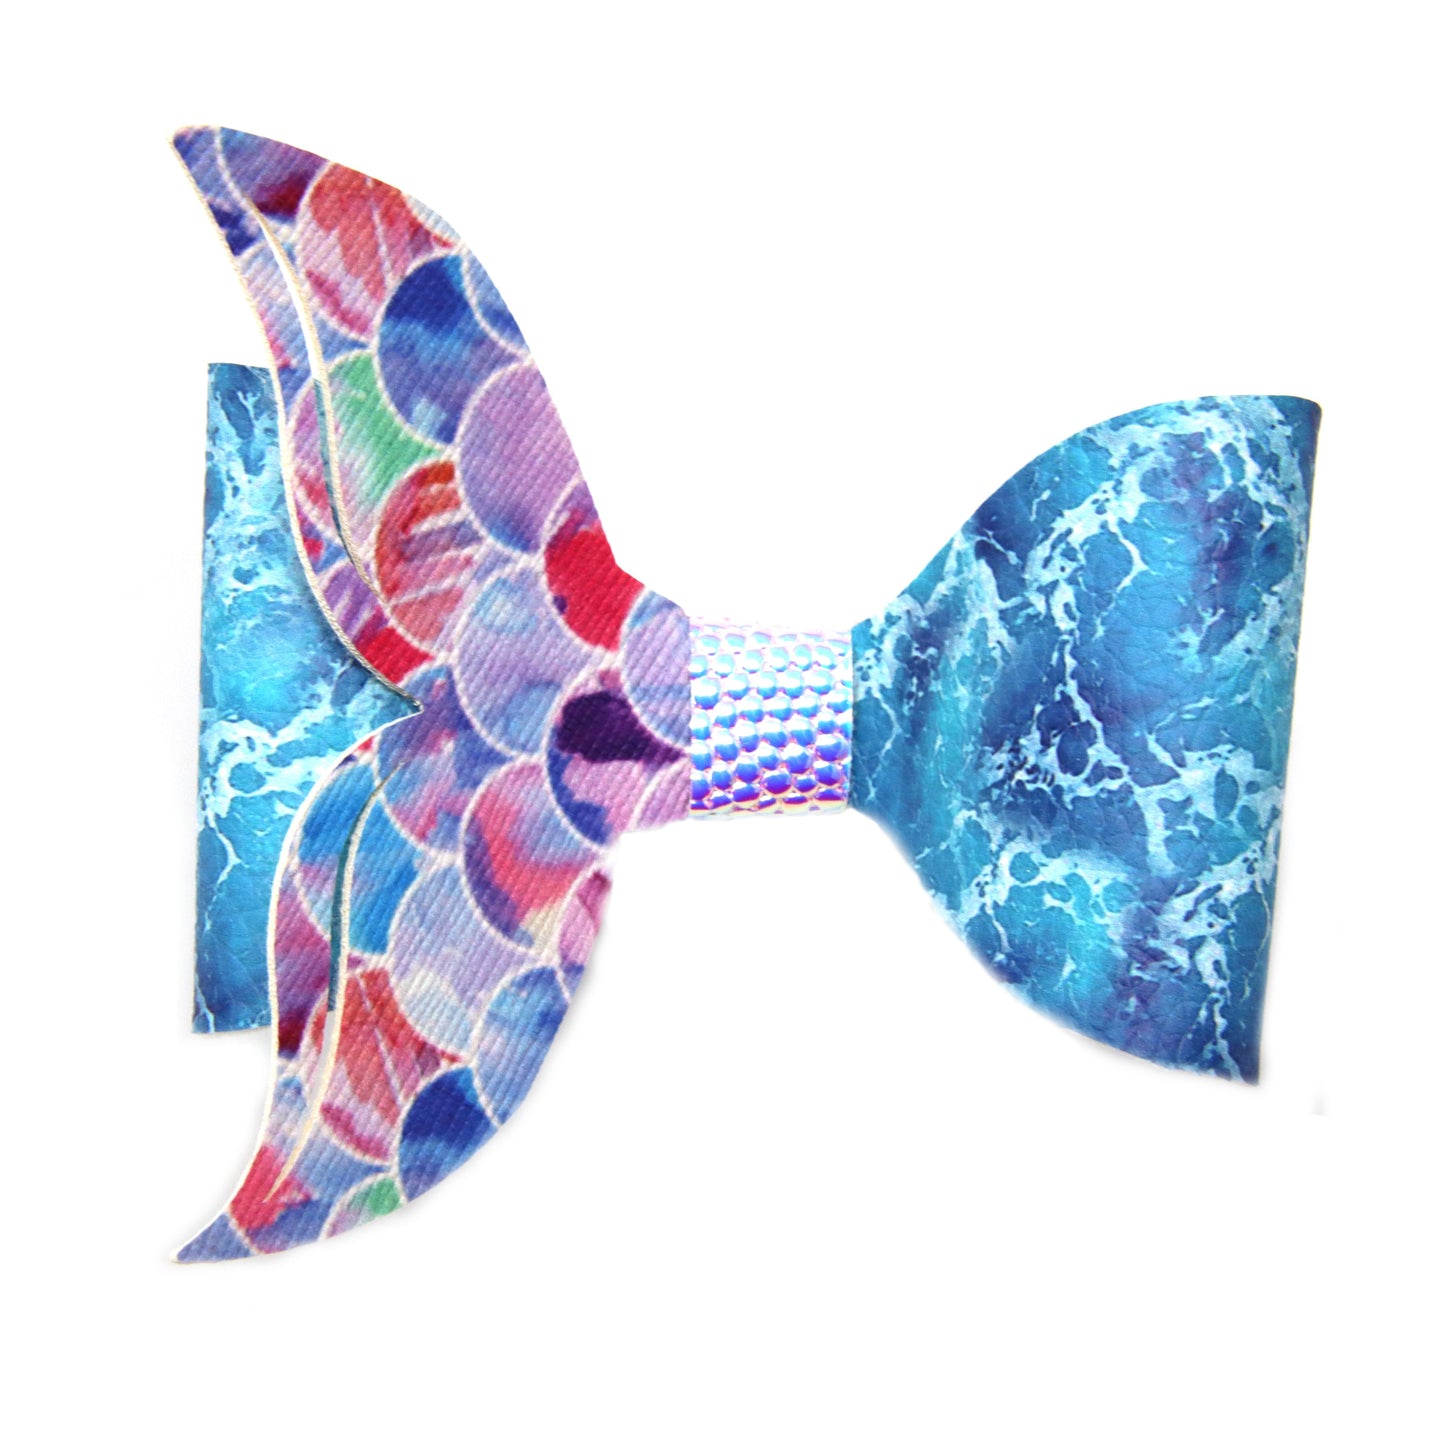 Single Loop Mermaid Tail Bow 3.5"